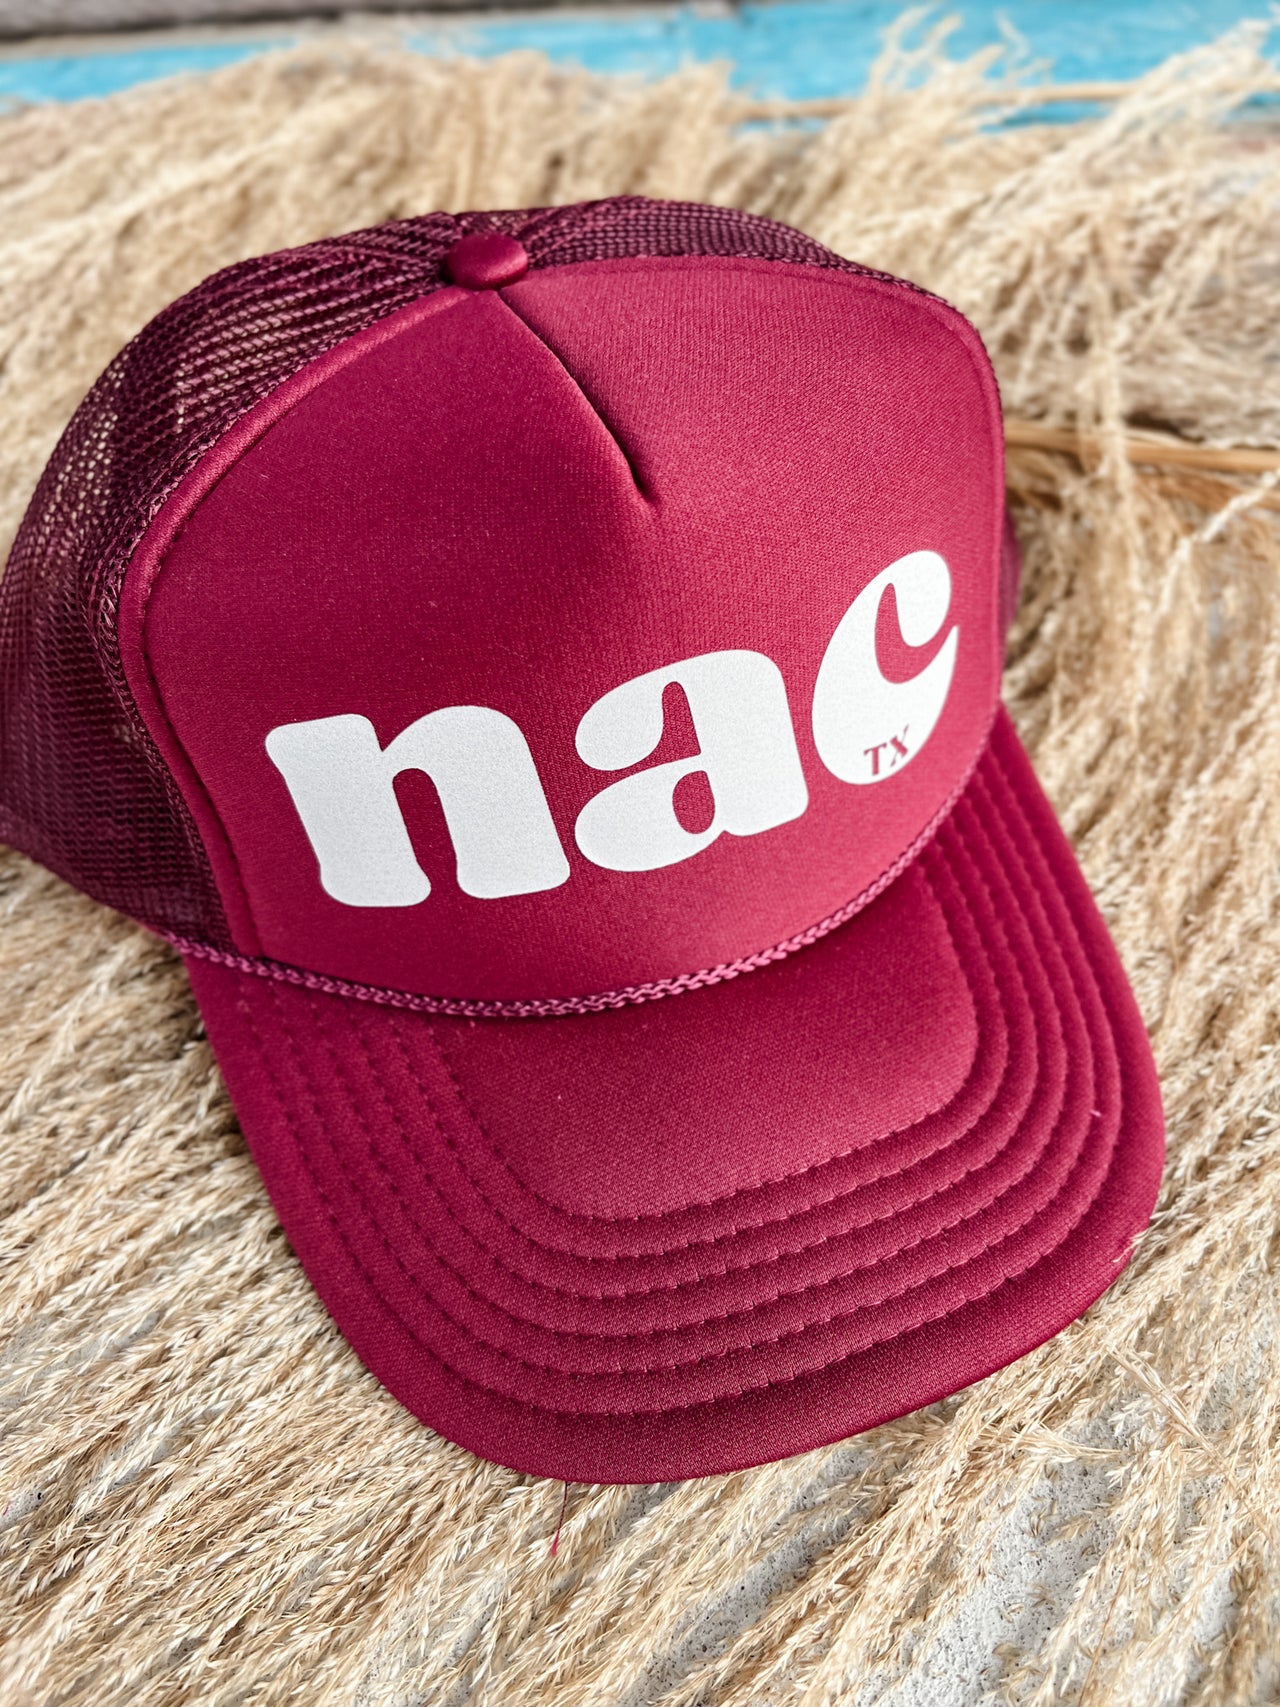 NAC TX Foam Hat- Marroon